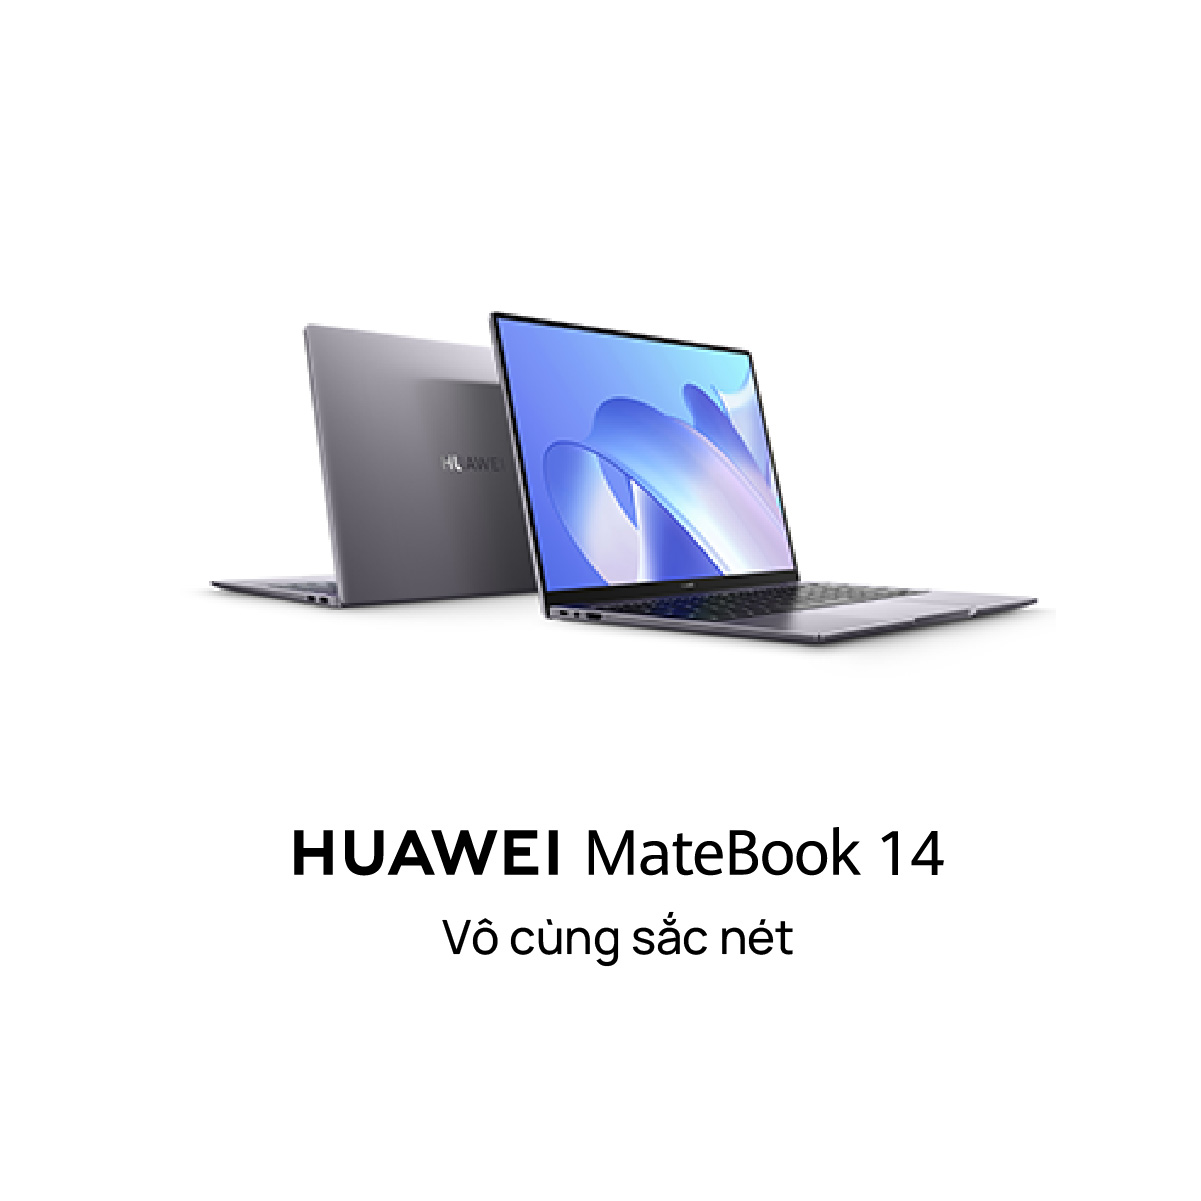 Top 3 Laptop Huawei Matebook Chính Hãng Tốt Nhất Năm 2022